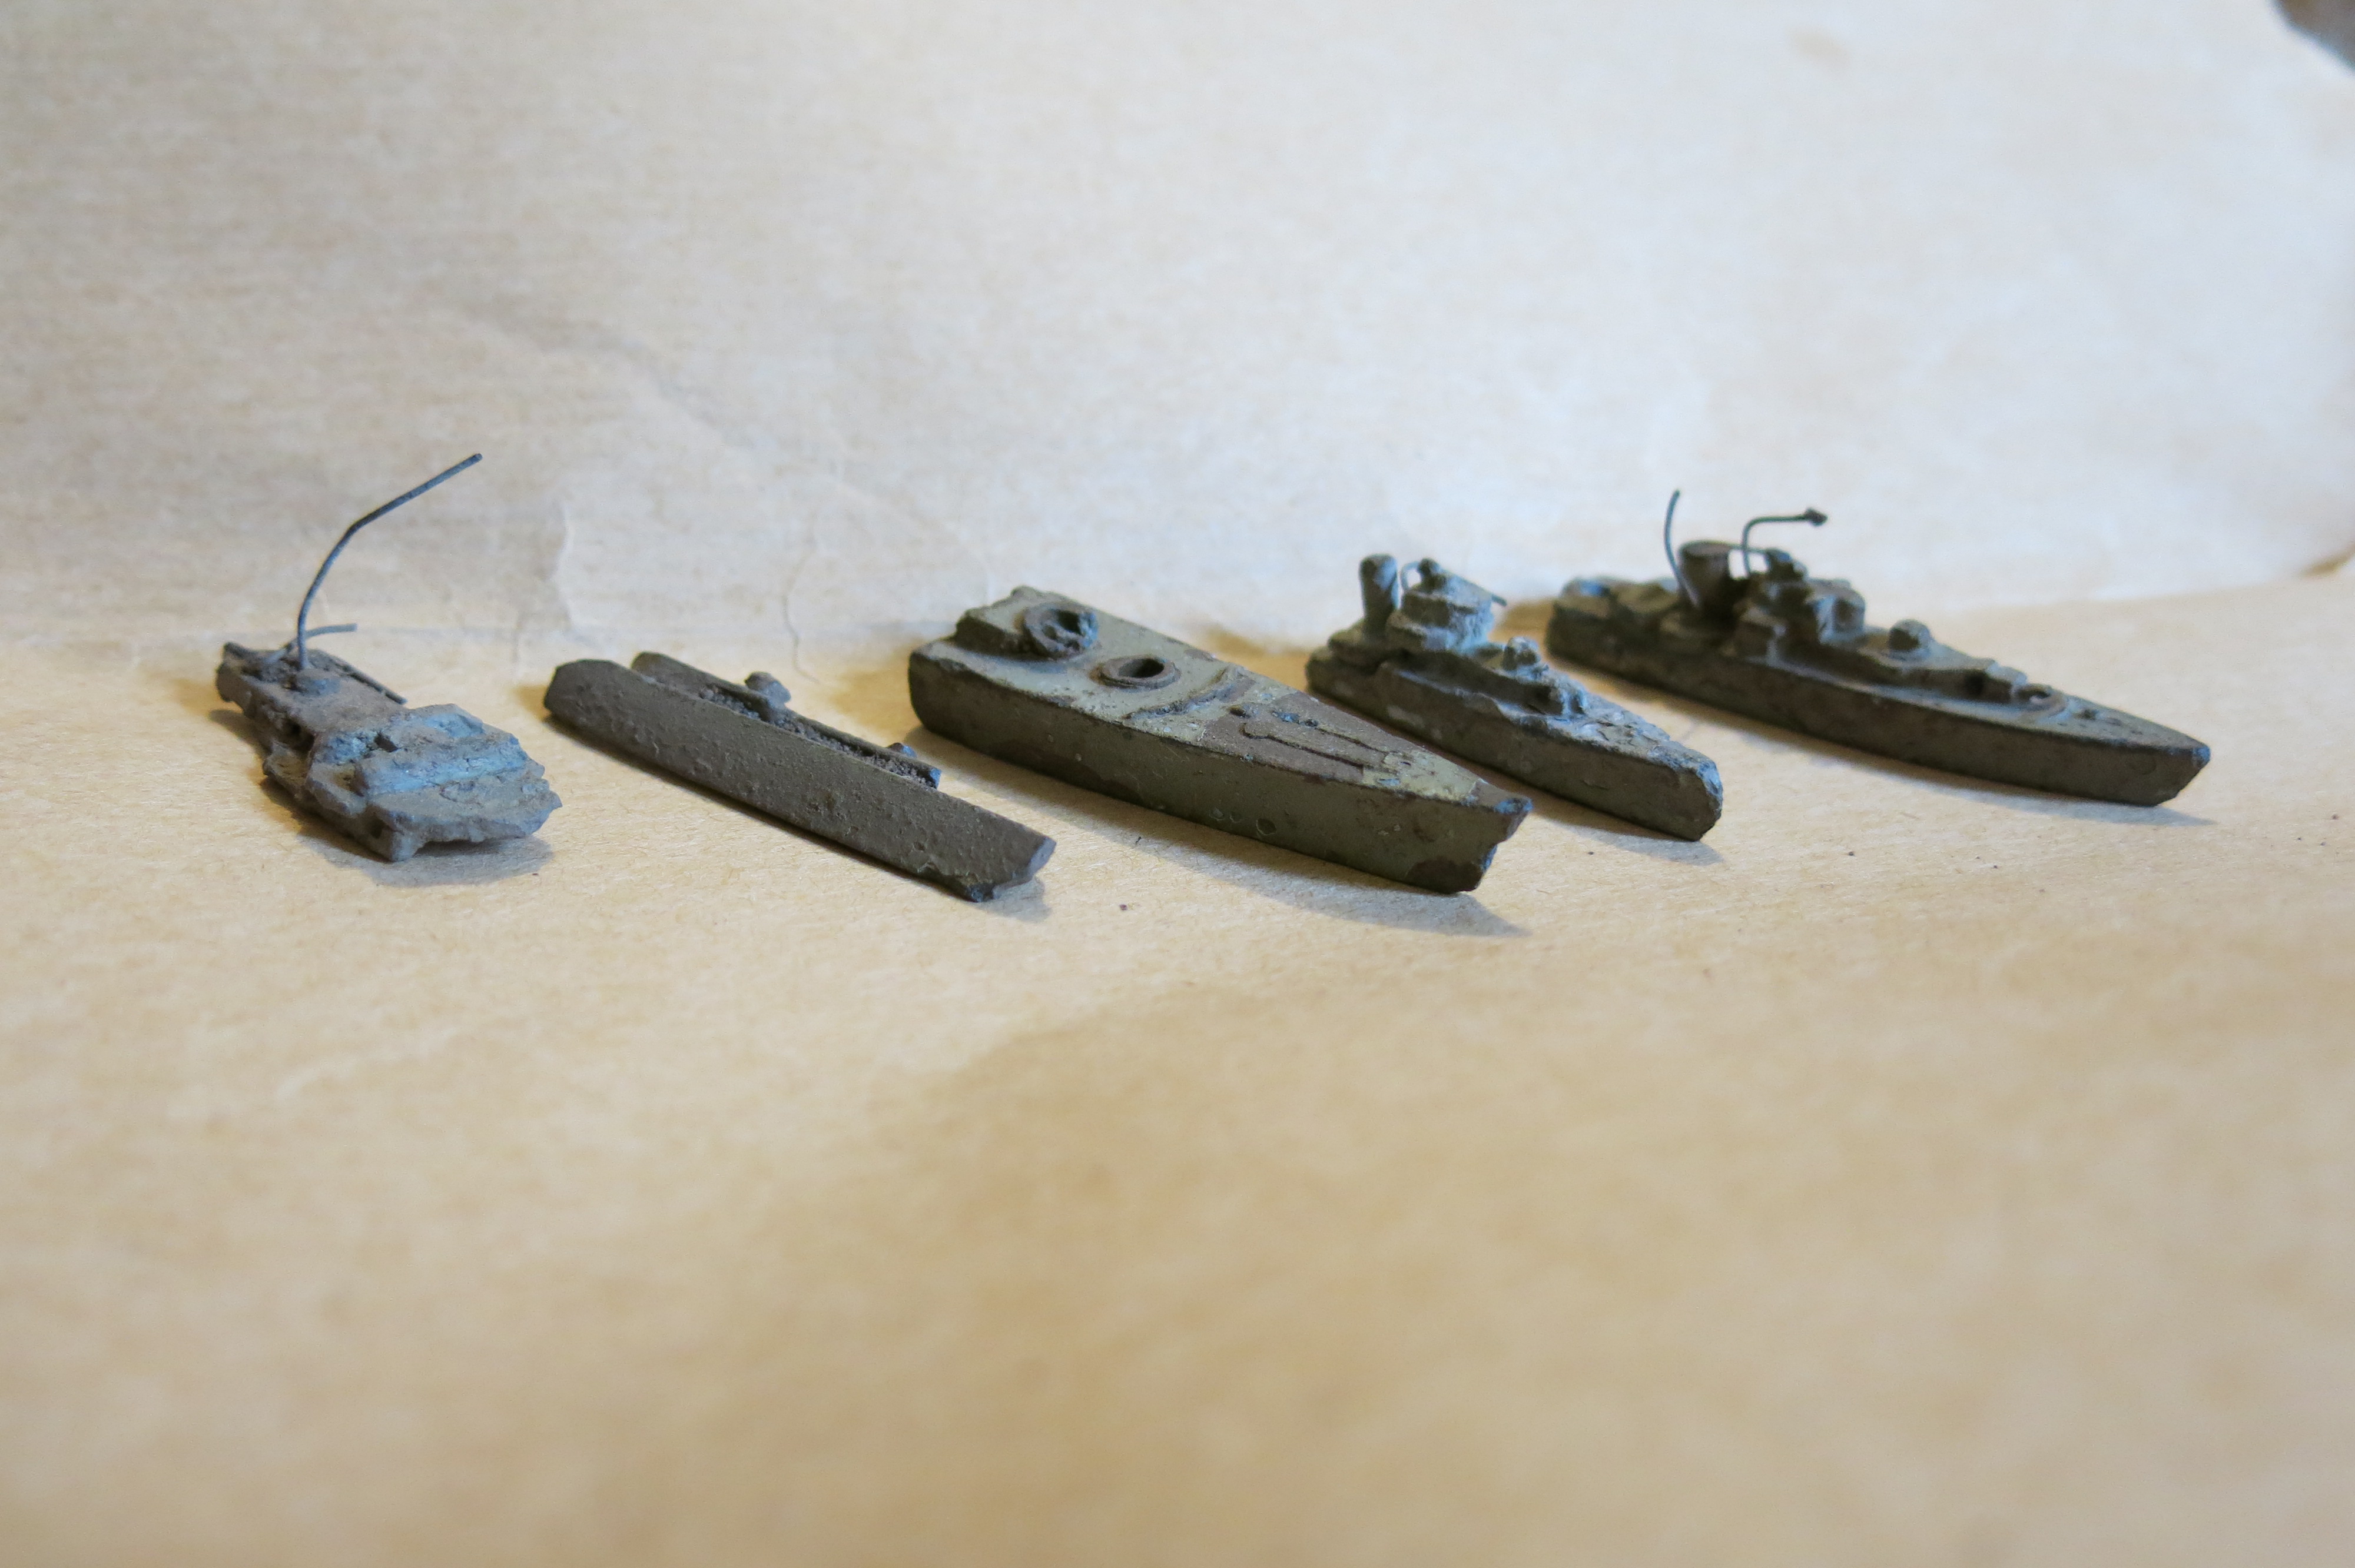 Rester av modeller funnet på kystfortet ca 5 cm lange.